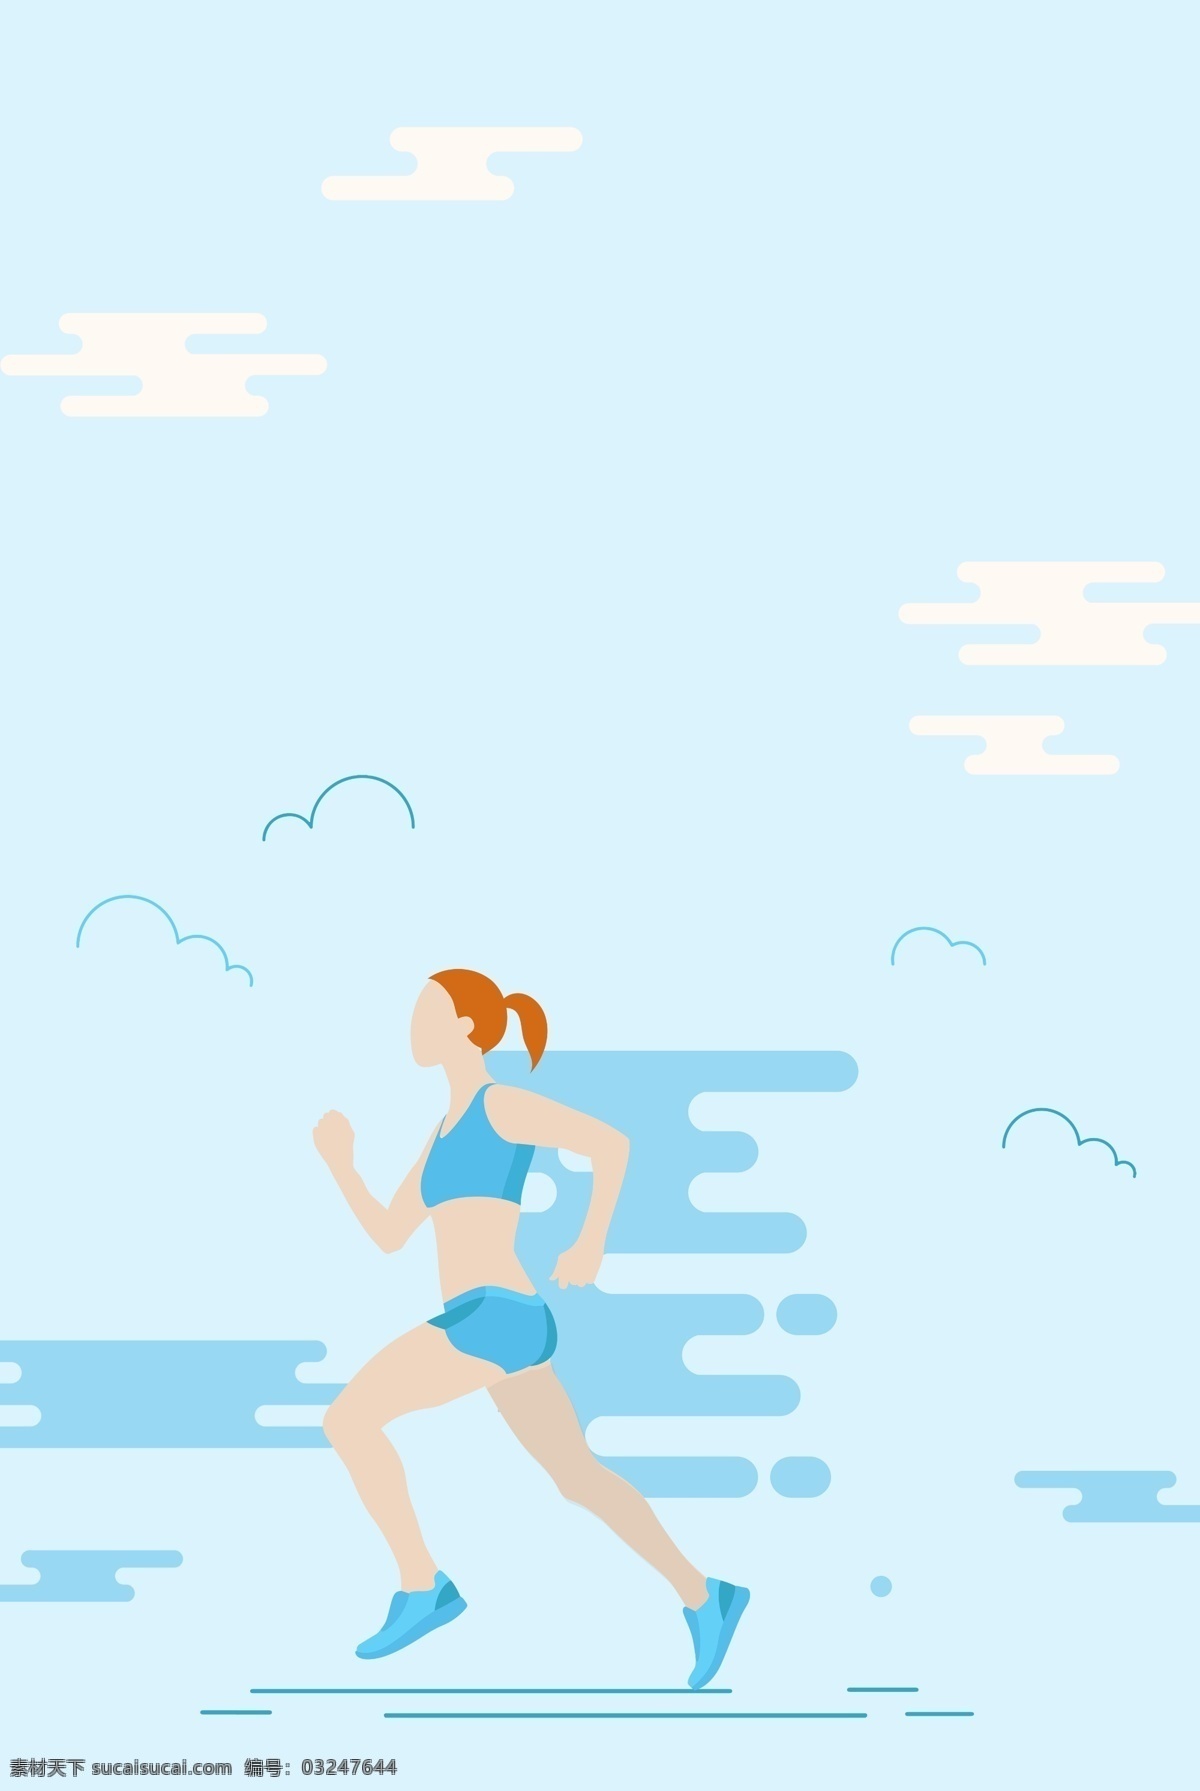 小 清新 蓝色 奔跑 跑步 运动 背景 小清新 运动背景 健康运动 运动生活 晨跑